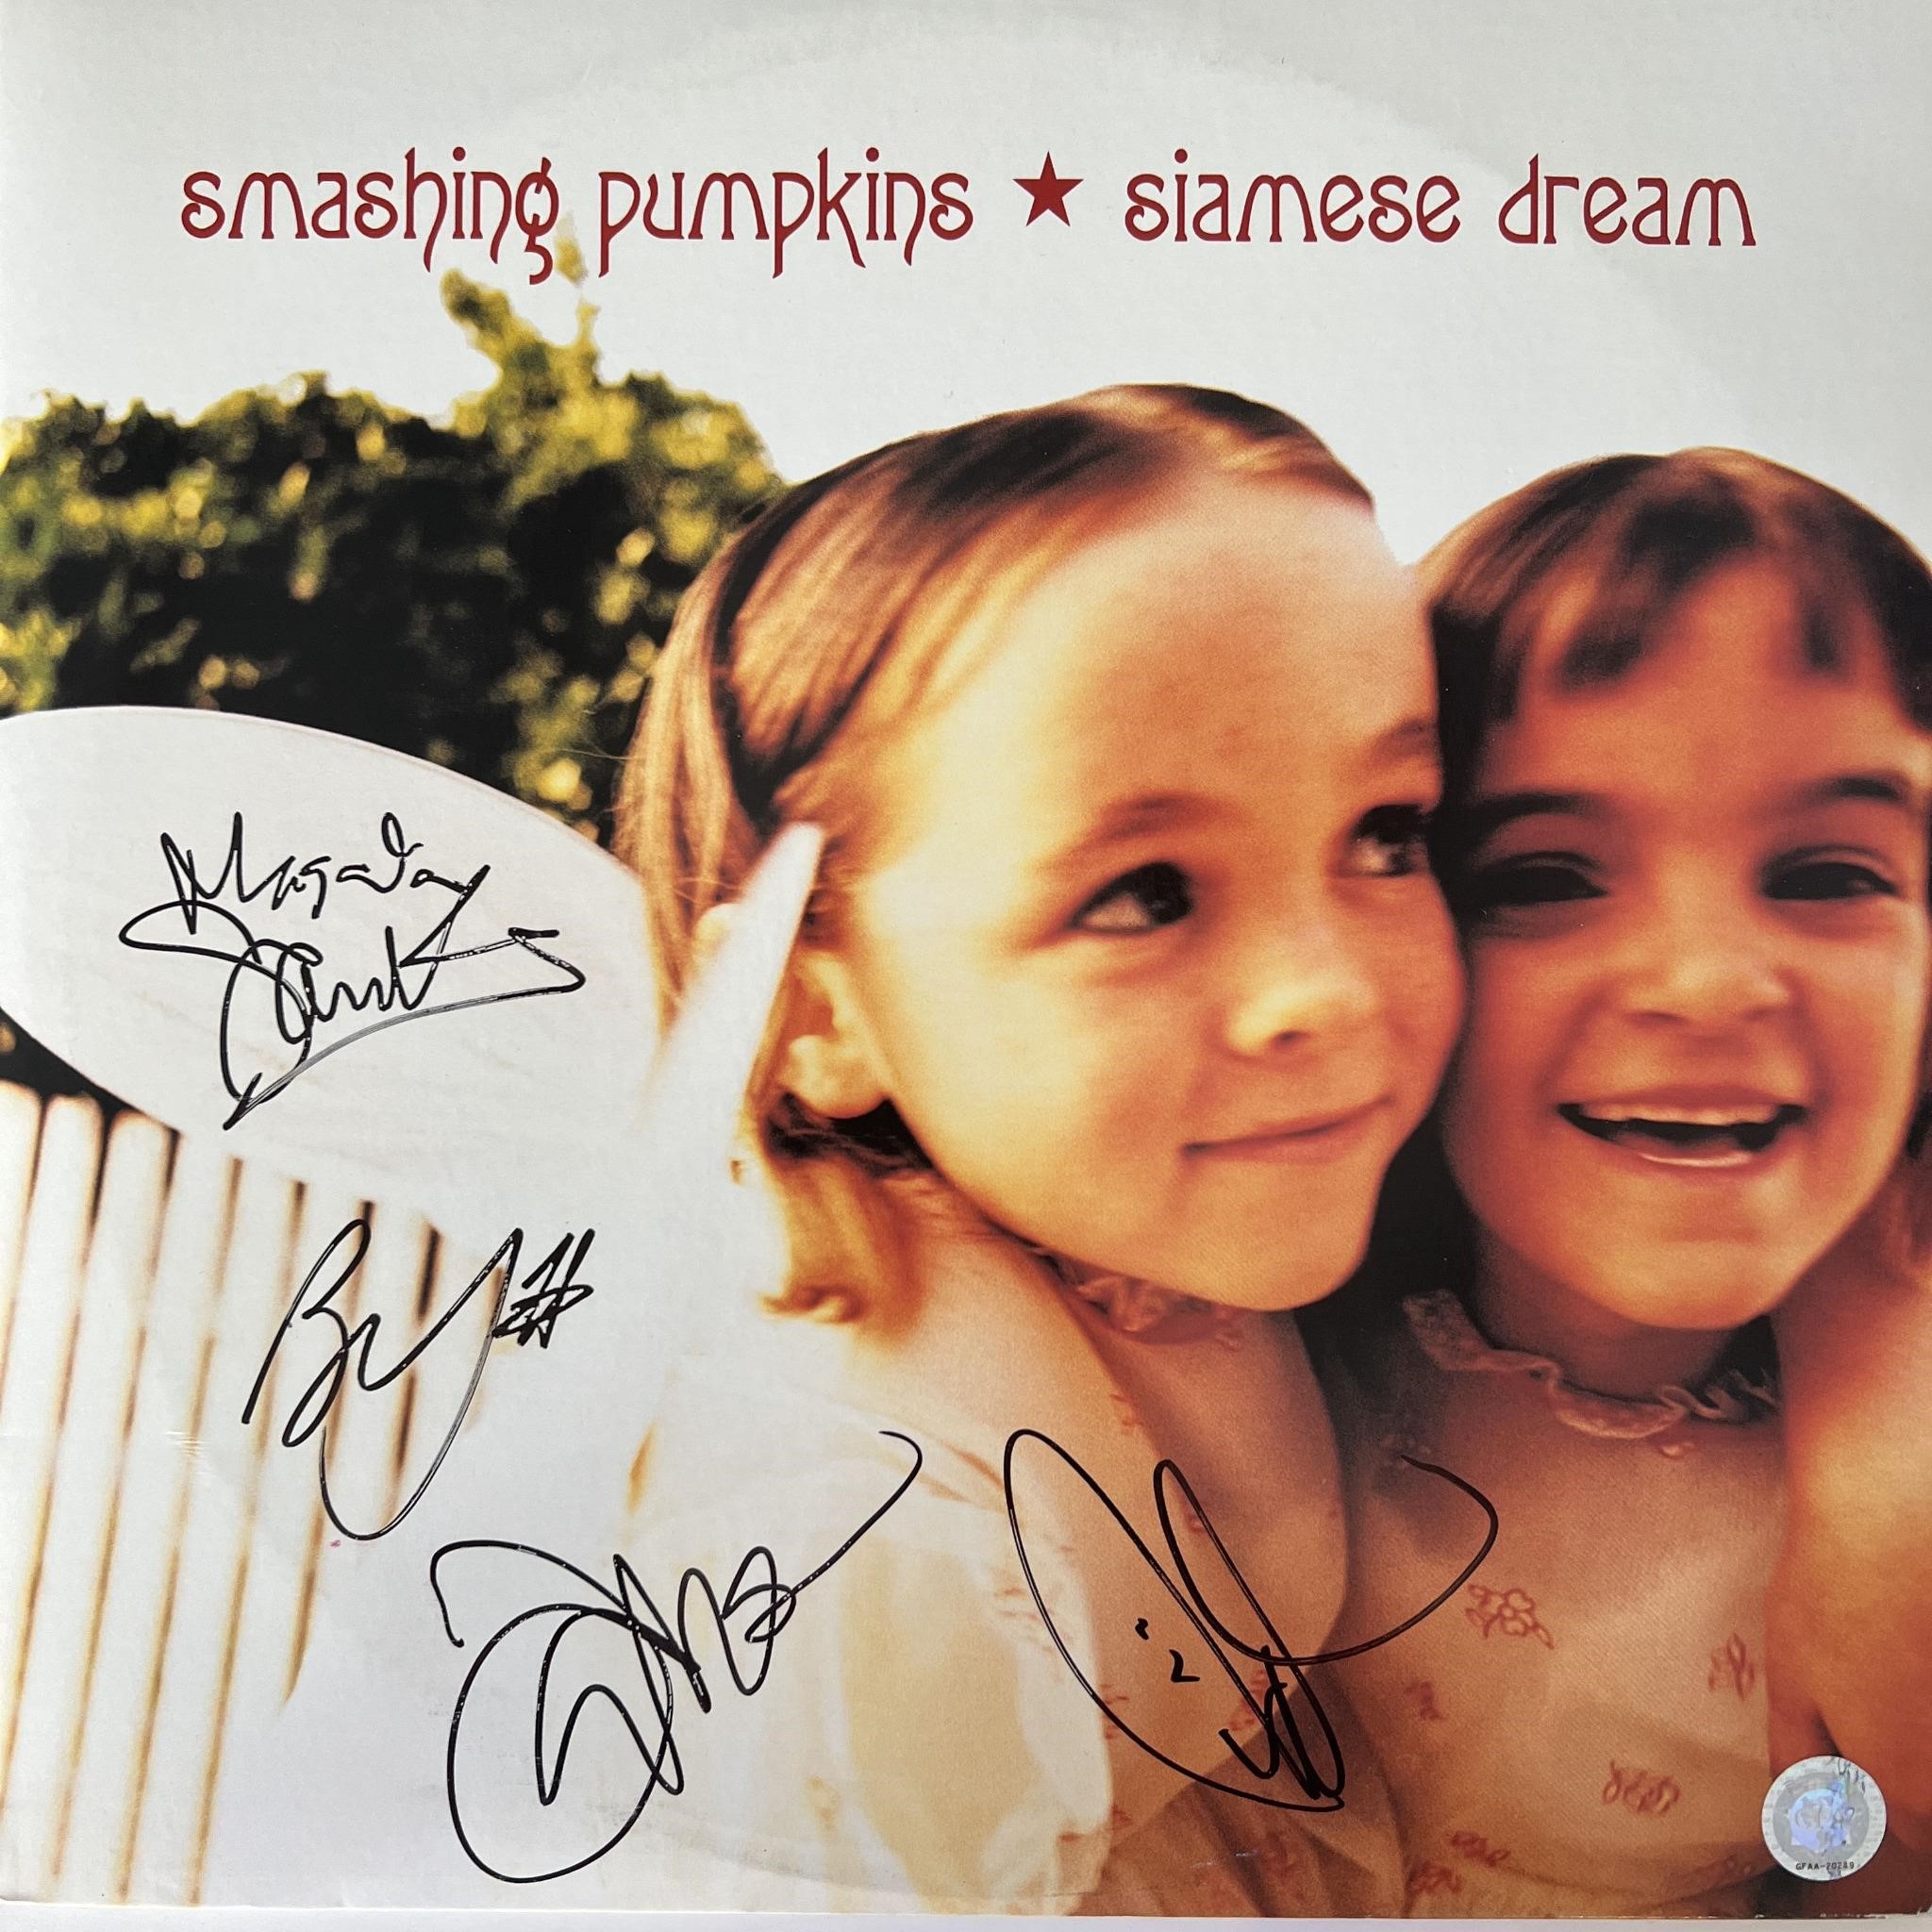 Smashing Pumpkins signed "Siamese Dream" album